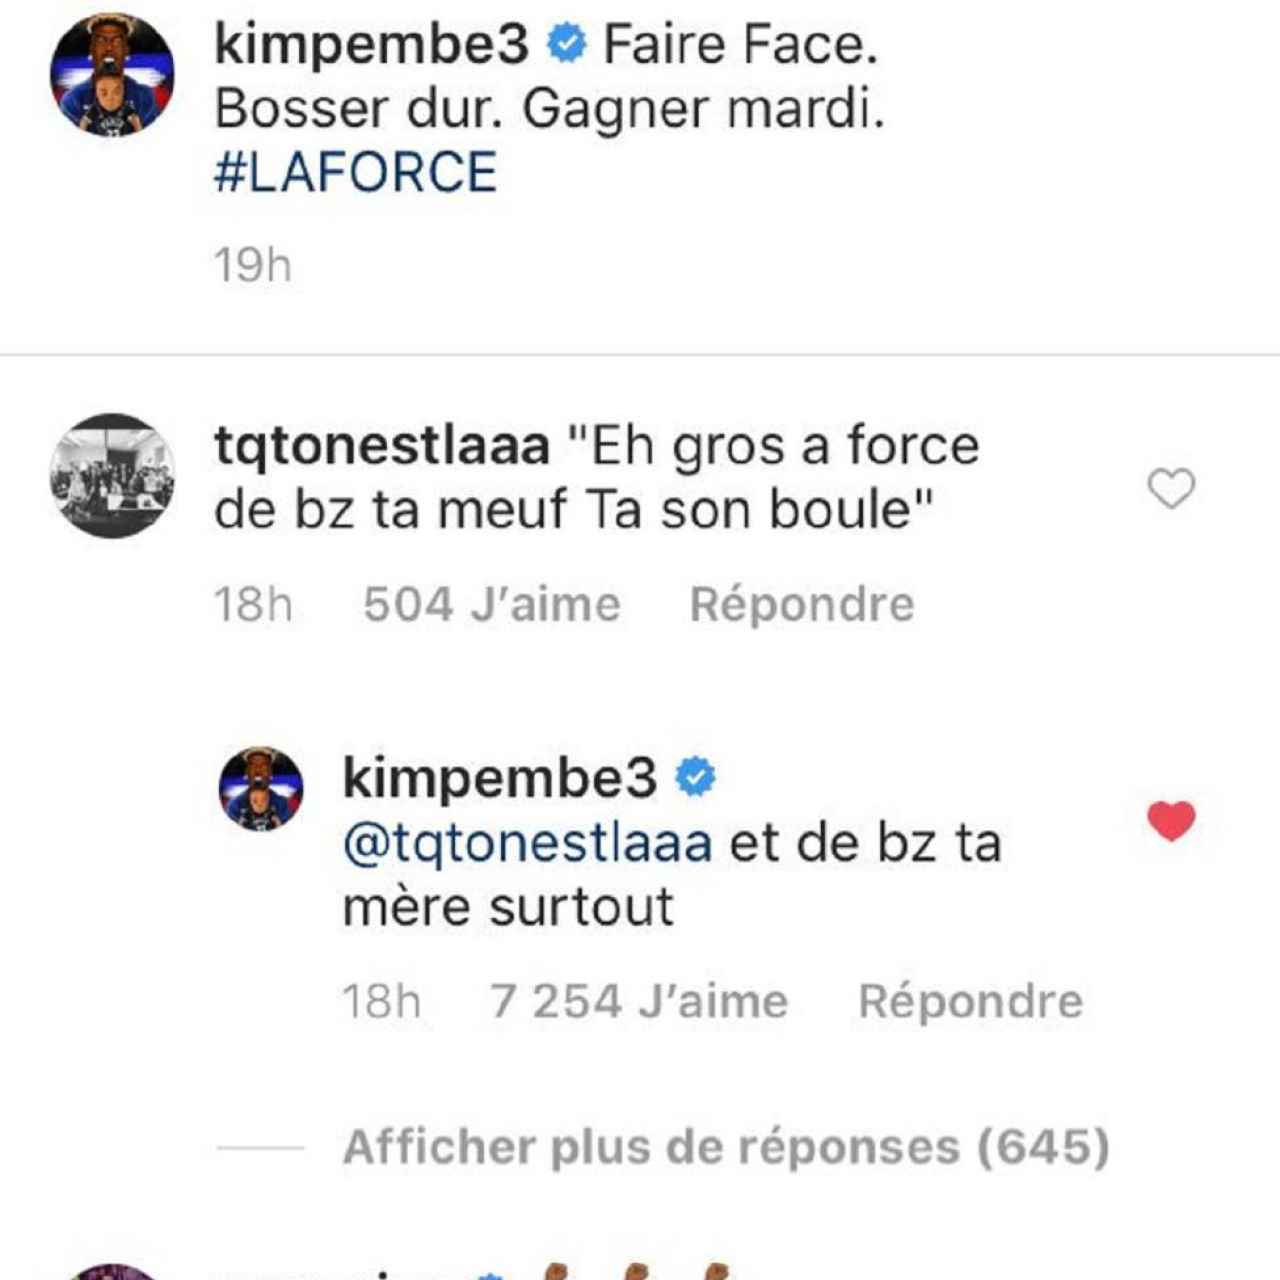 La respuesta de Kimpembe al seguidor de Instagram.